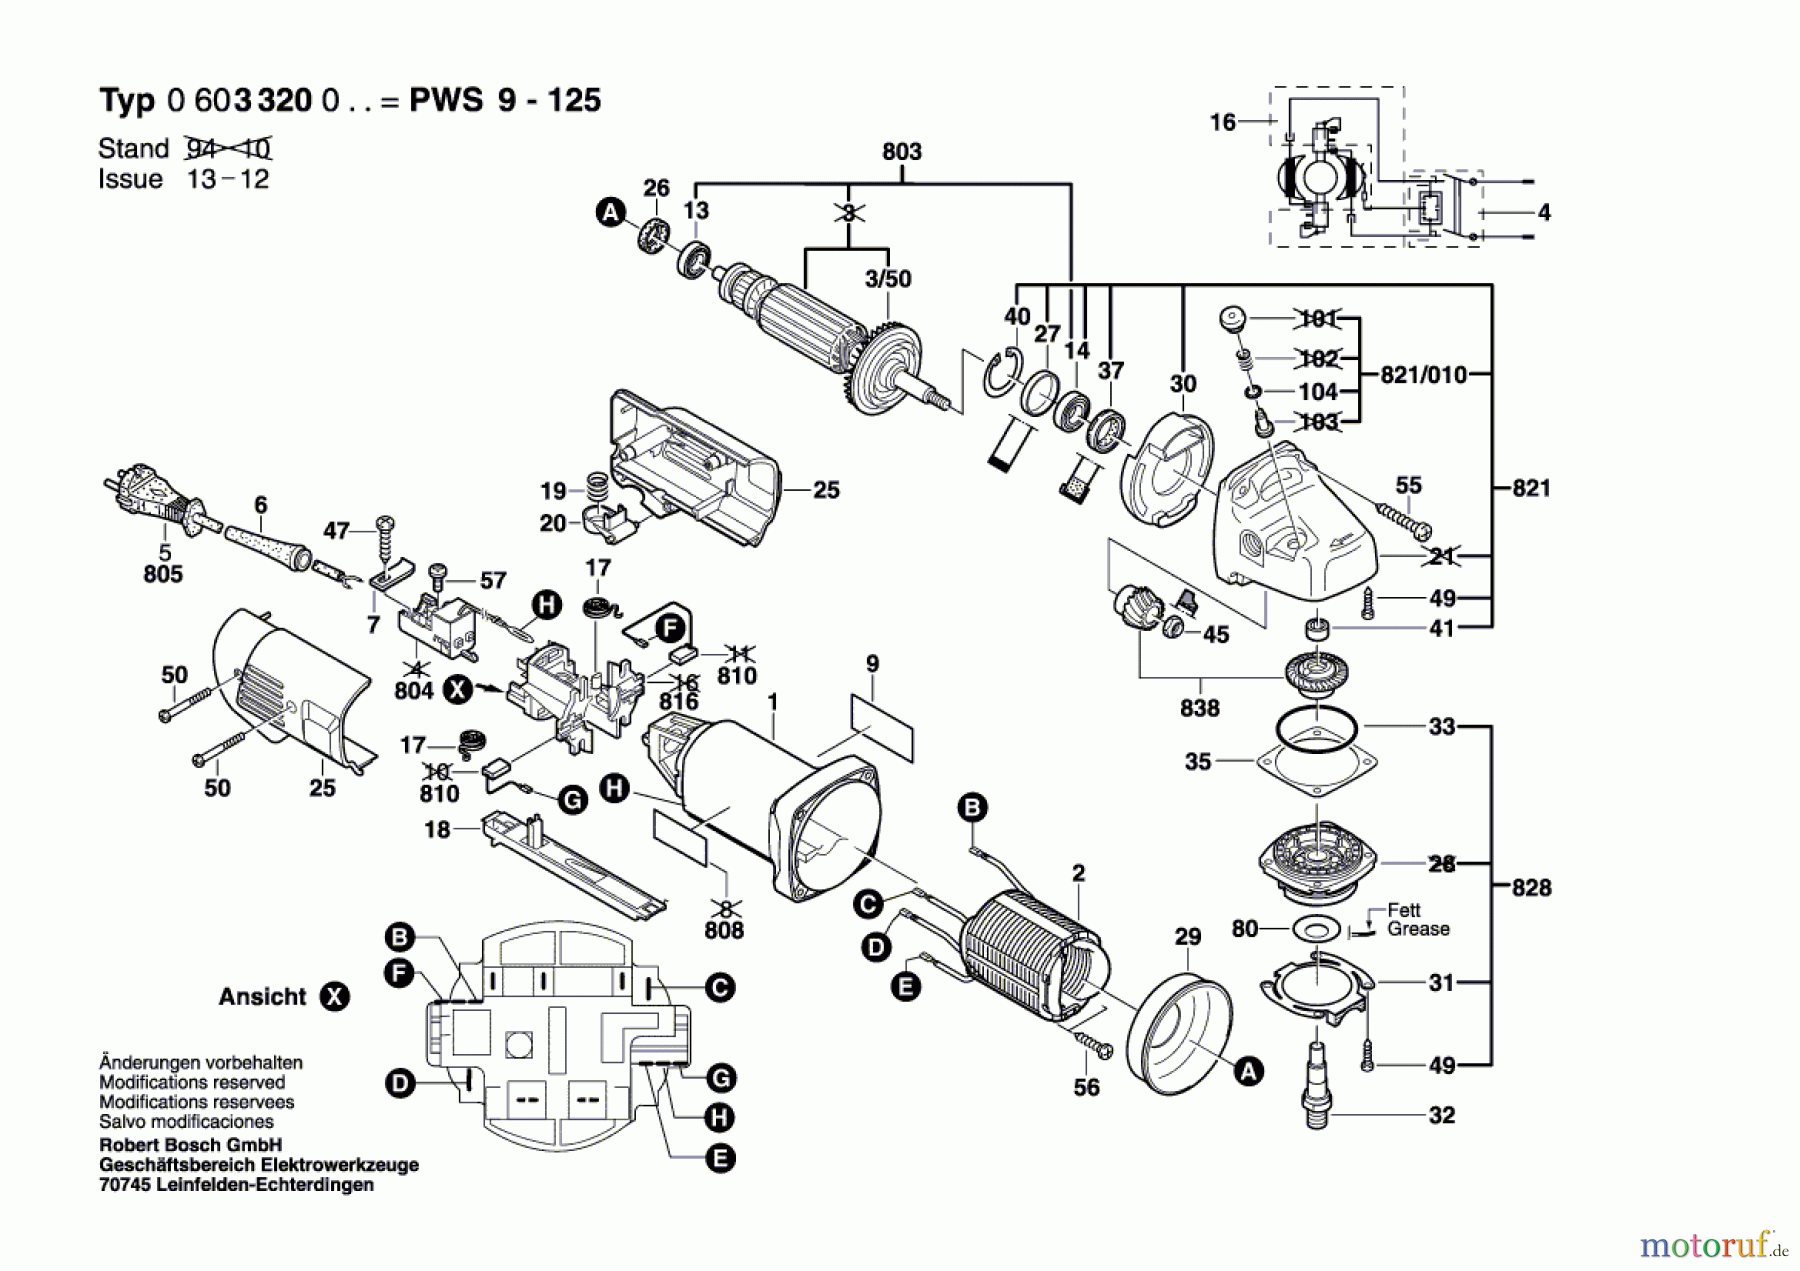  Bosch Werkzeug Winkelschleifer PWS 9-125 Seite 1